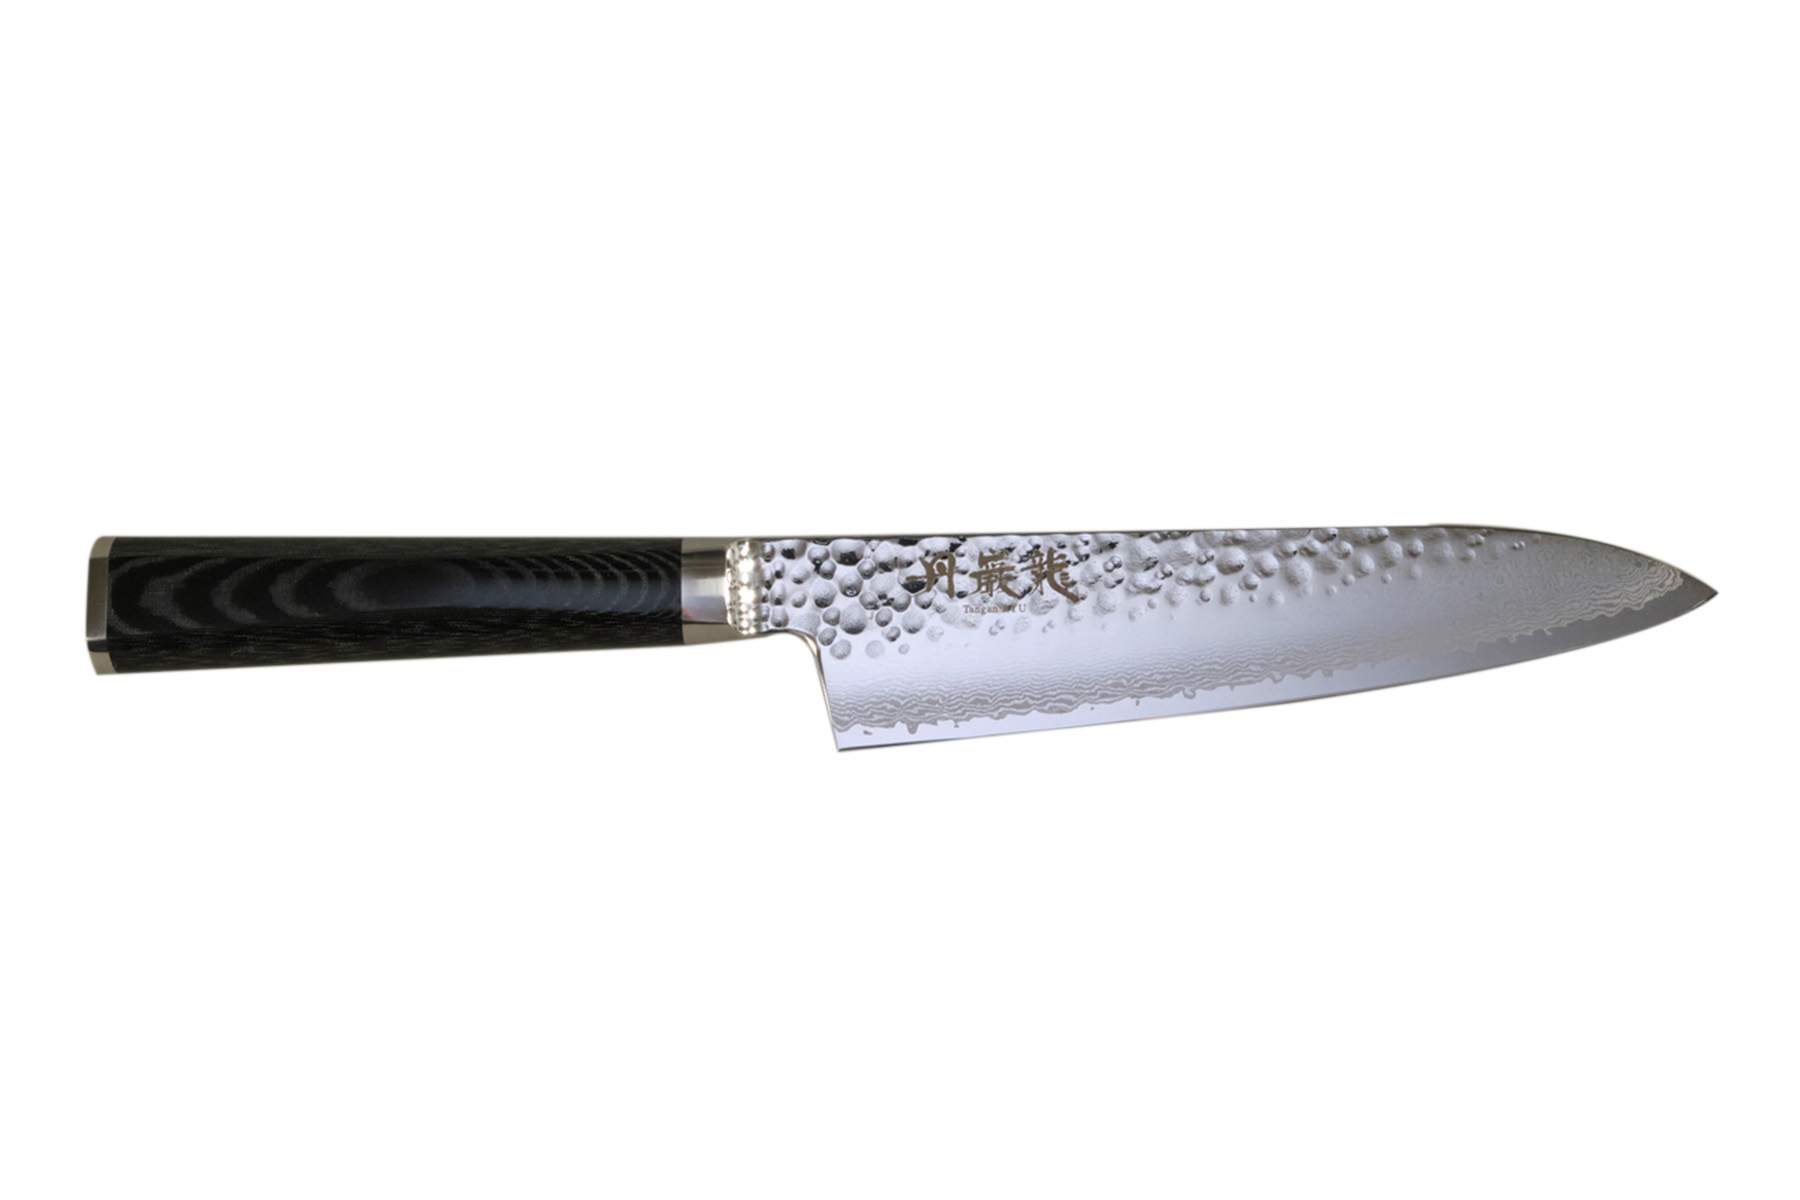 Couteau japonais Ryusen Tangan Ryu micarta - Couteau gyuto 18 cm